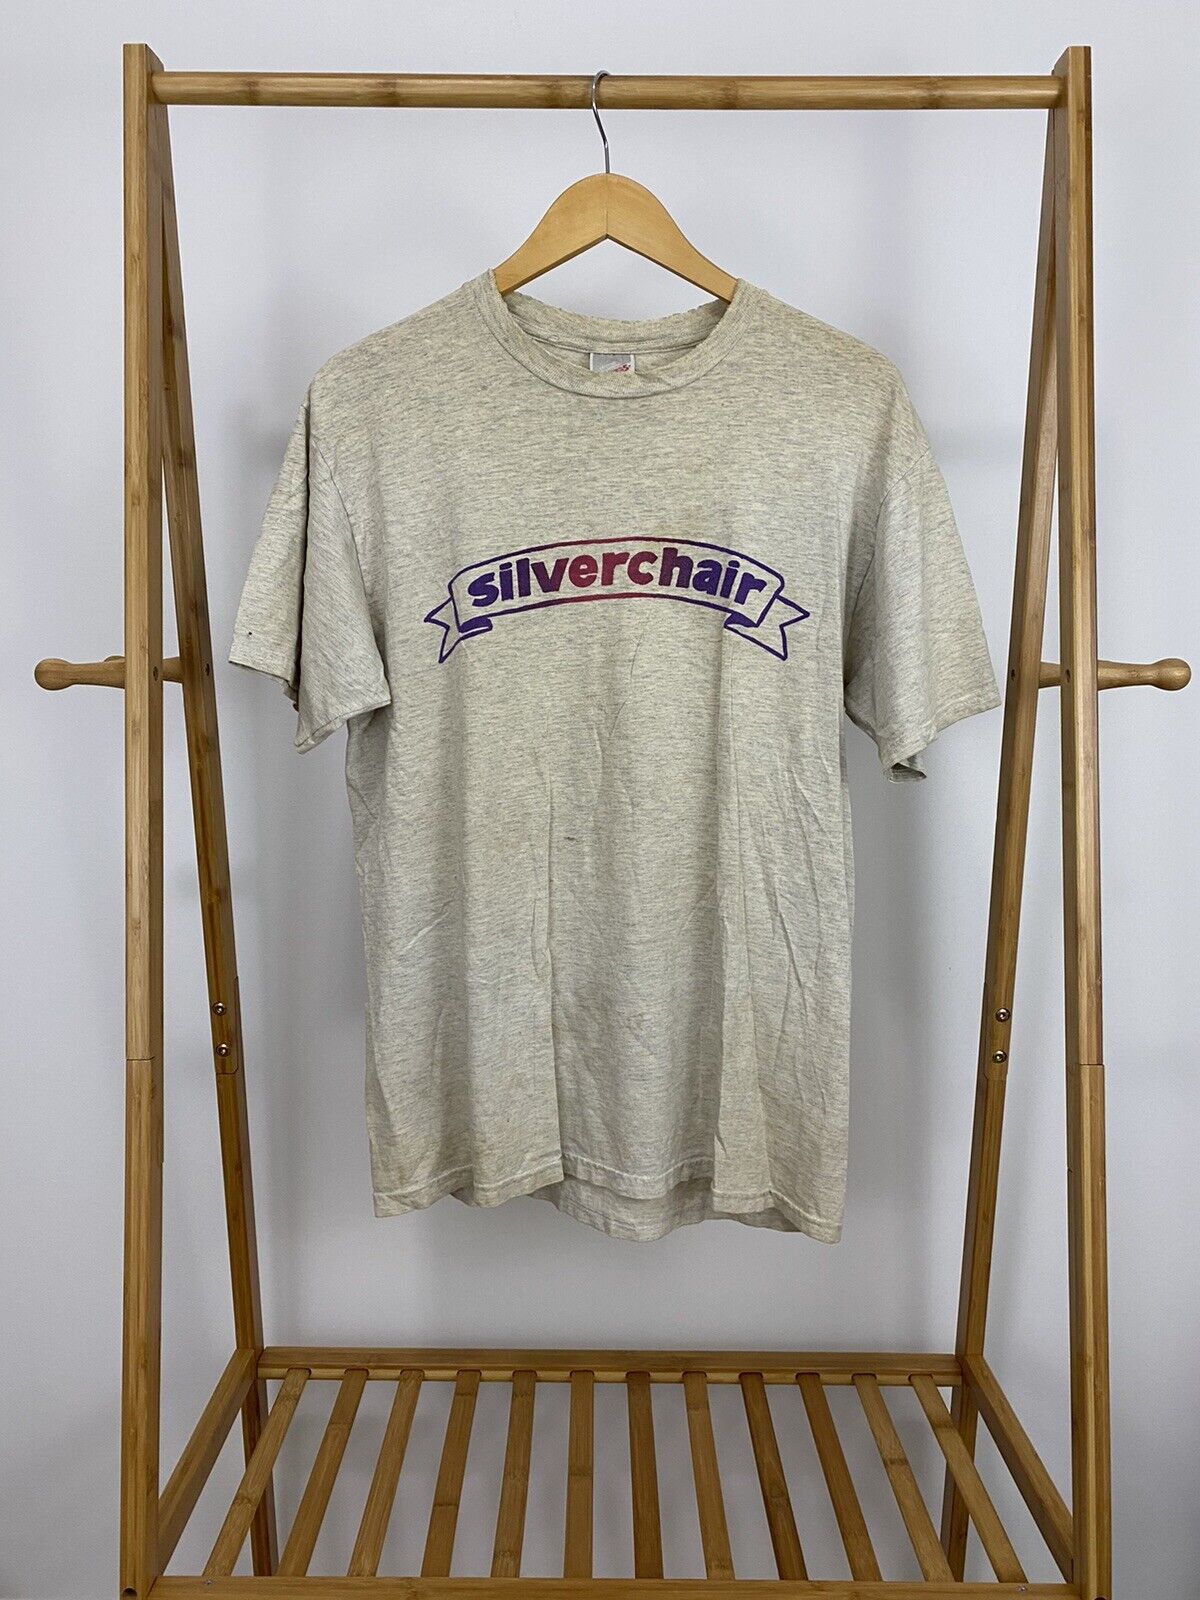 RARE VTG Silverchair Freak Show 90s Tour Promo Short Sleeve T-Shirt Size L 